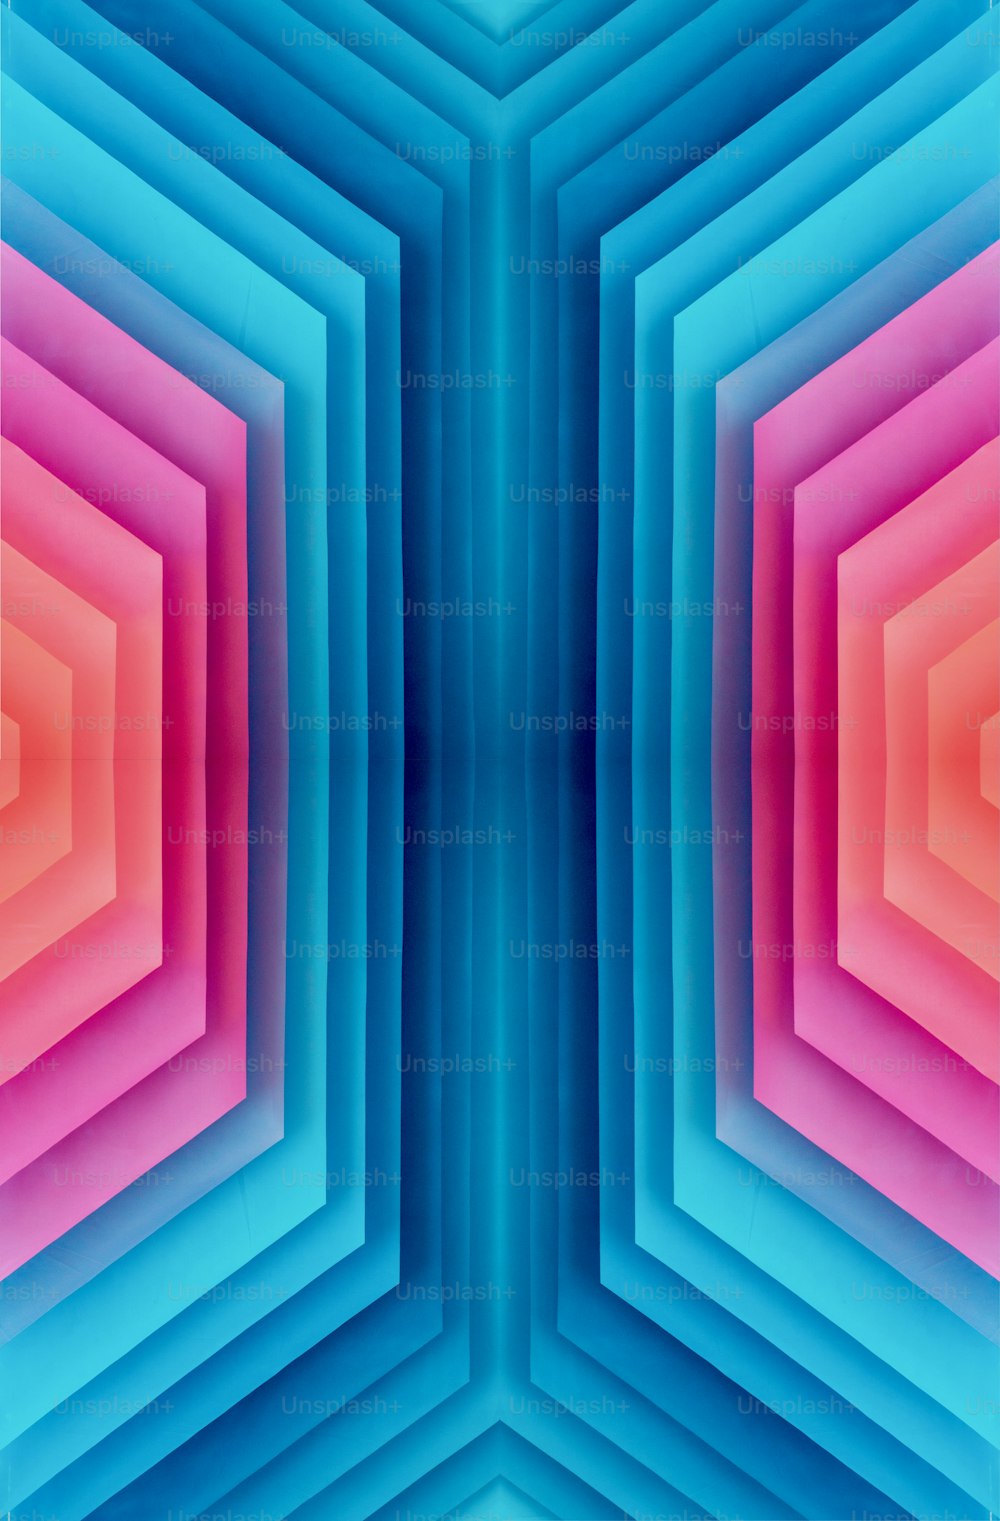 Une image abstraite d’une structure hexagonale bleue et rose